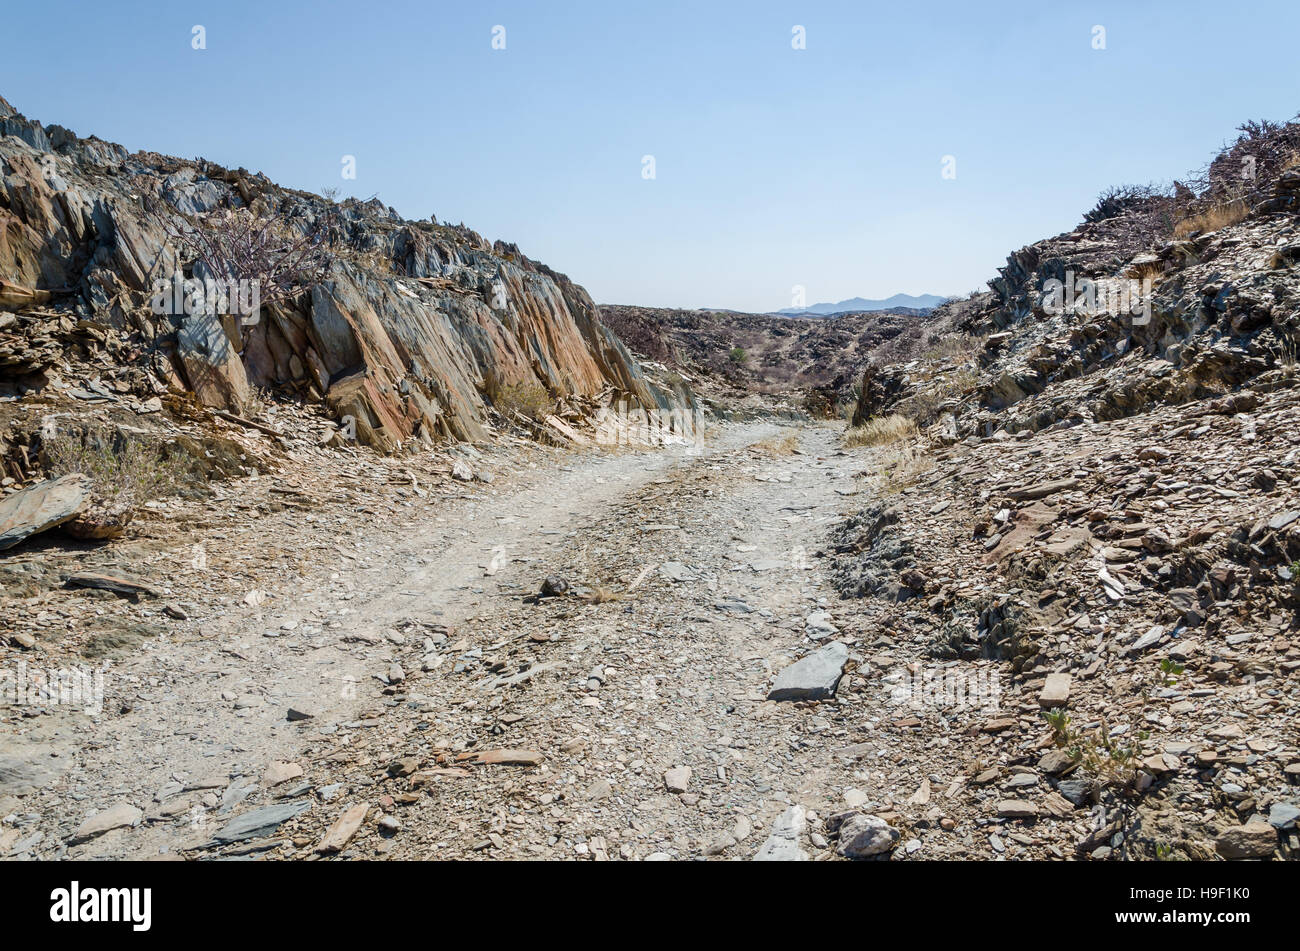 Traccia in esecuzione attraverso rocciose deserto arido scenario in antico deserto del Namib dell Angola Foto Stock